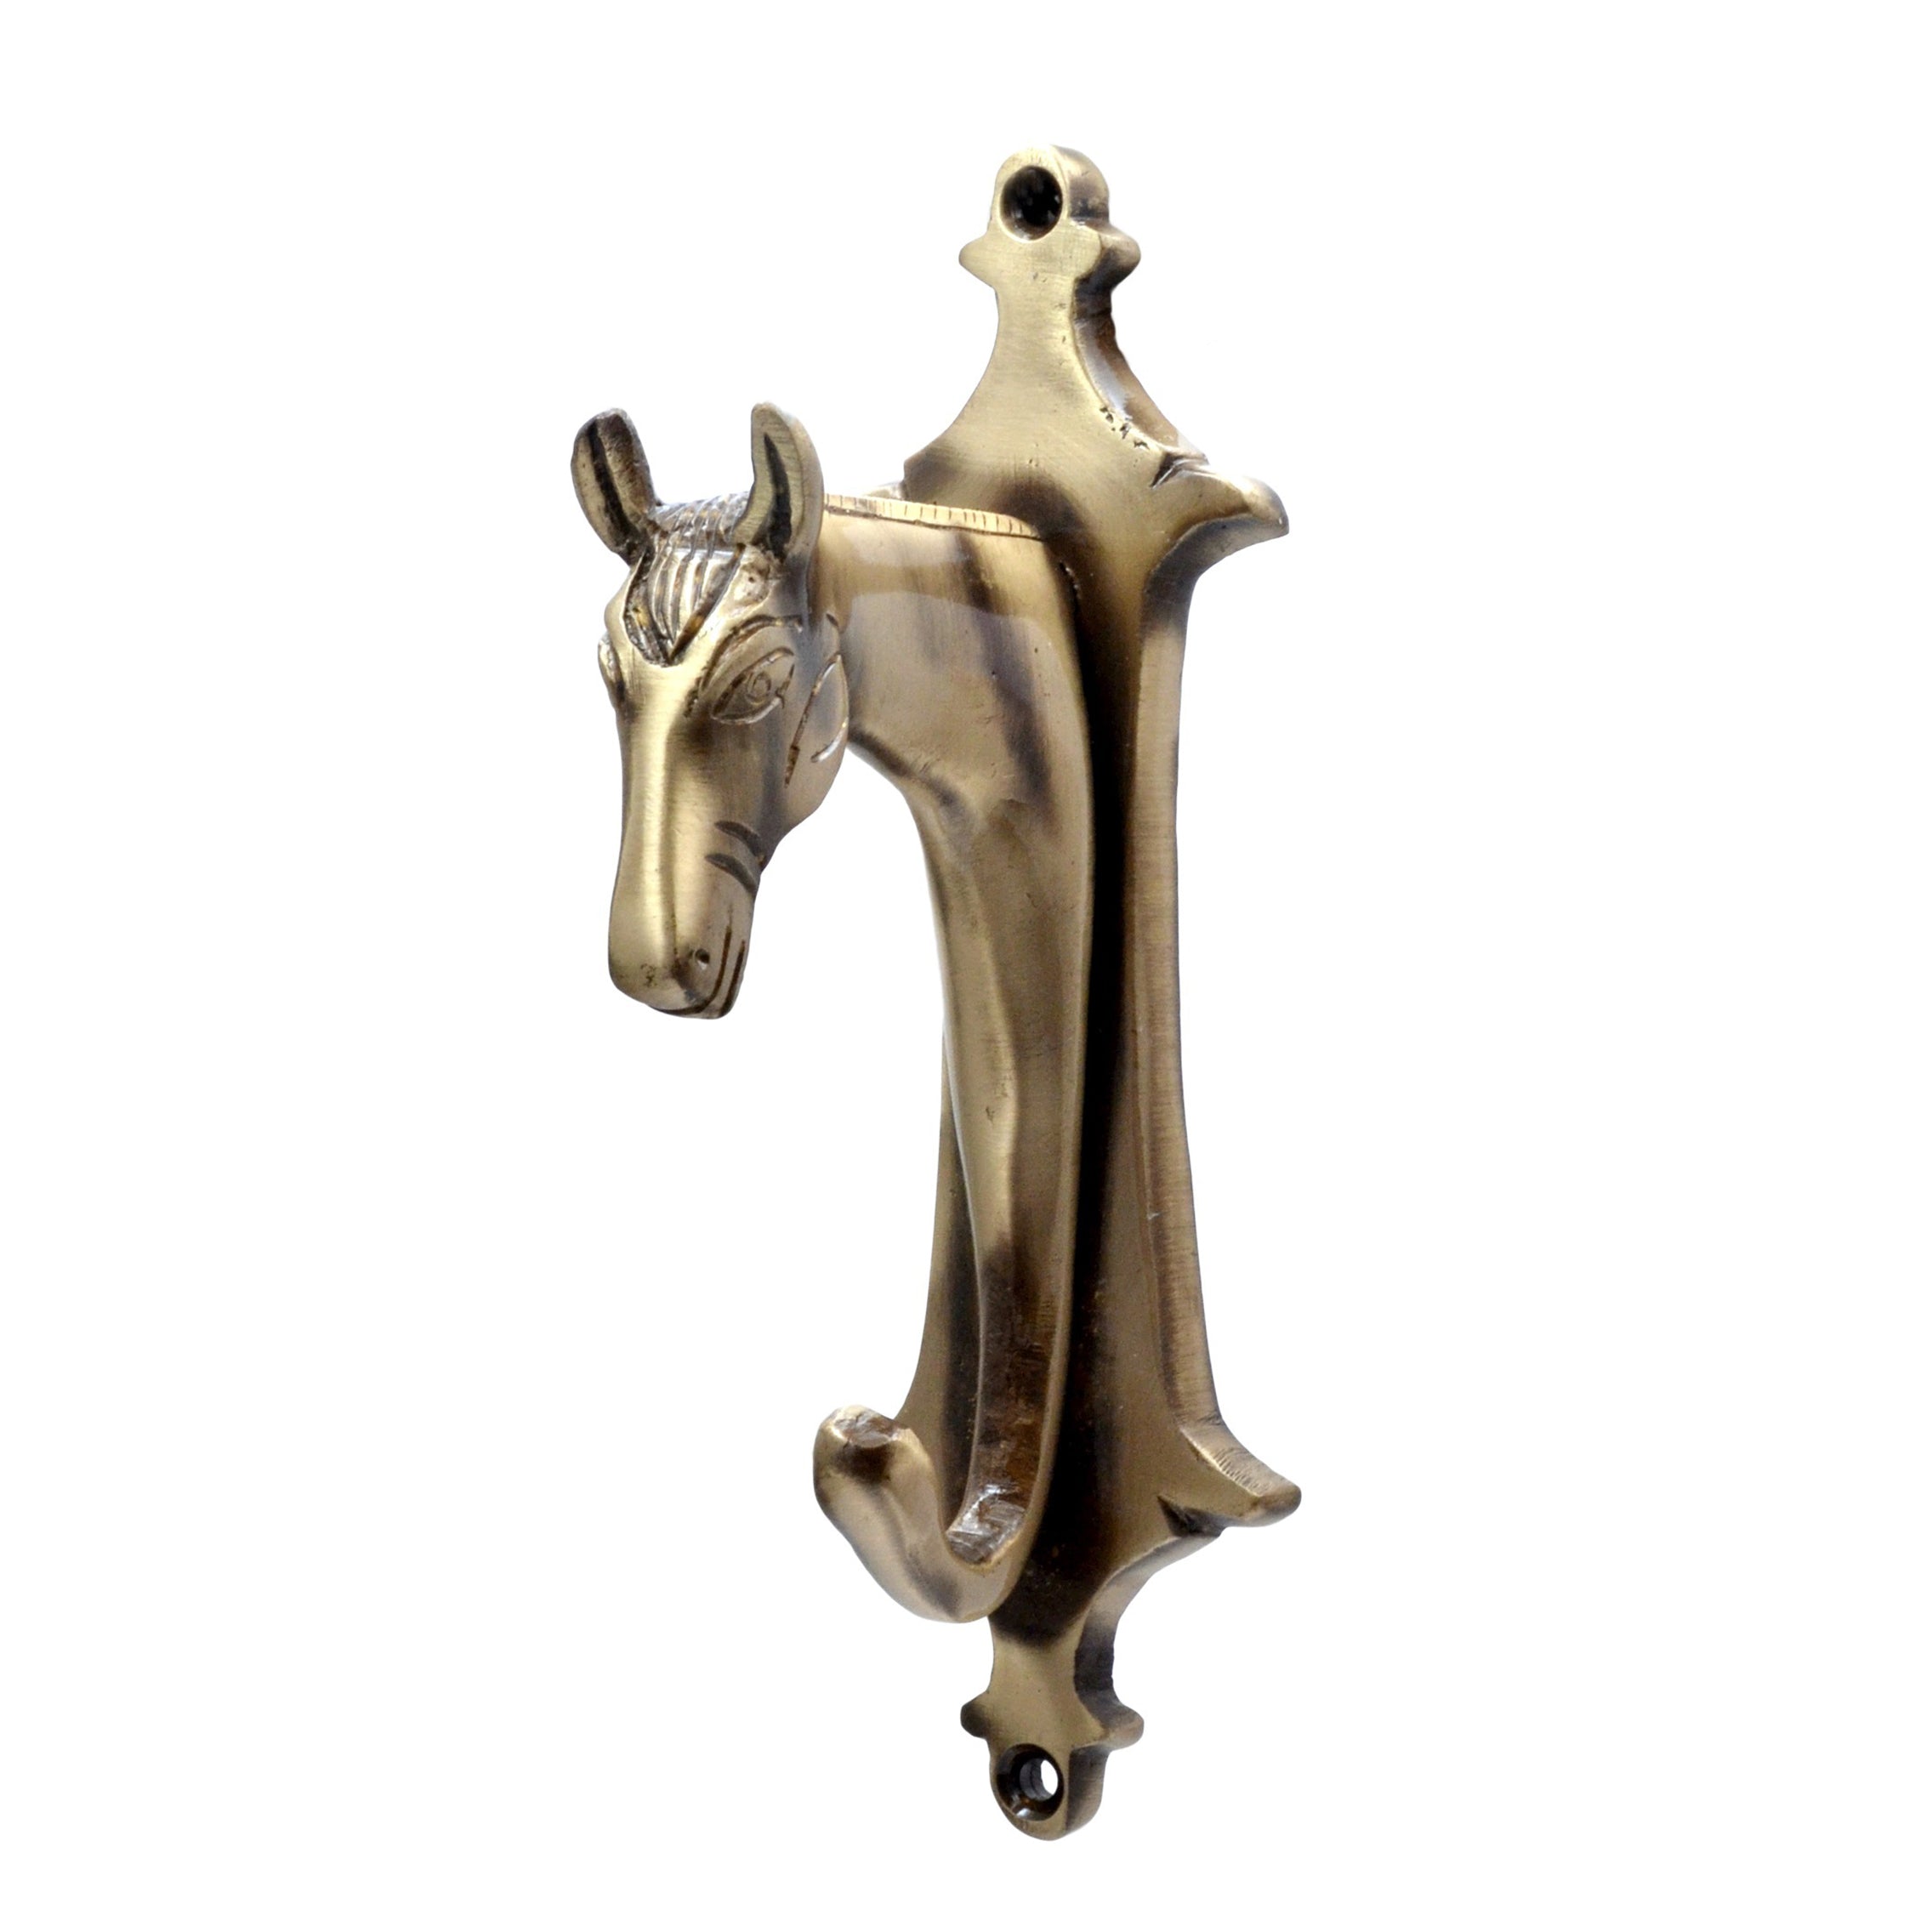 Brass Horse Head Design Key Holder, Antique Brown